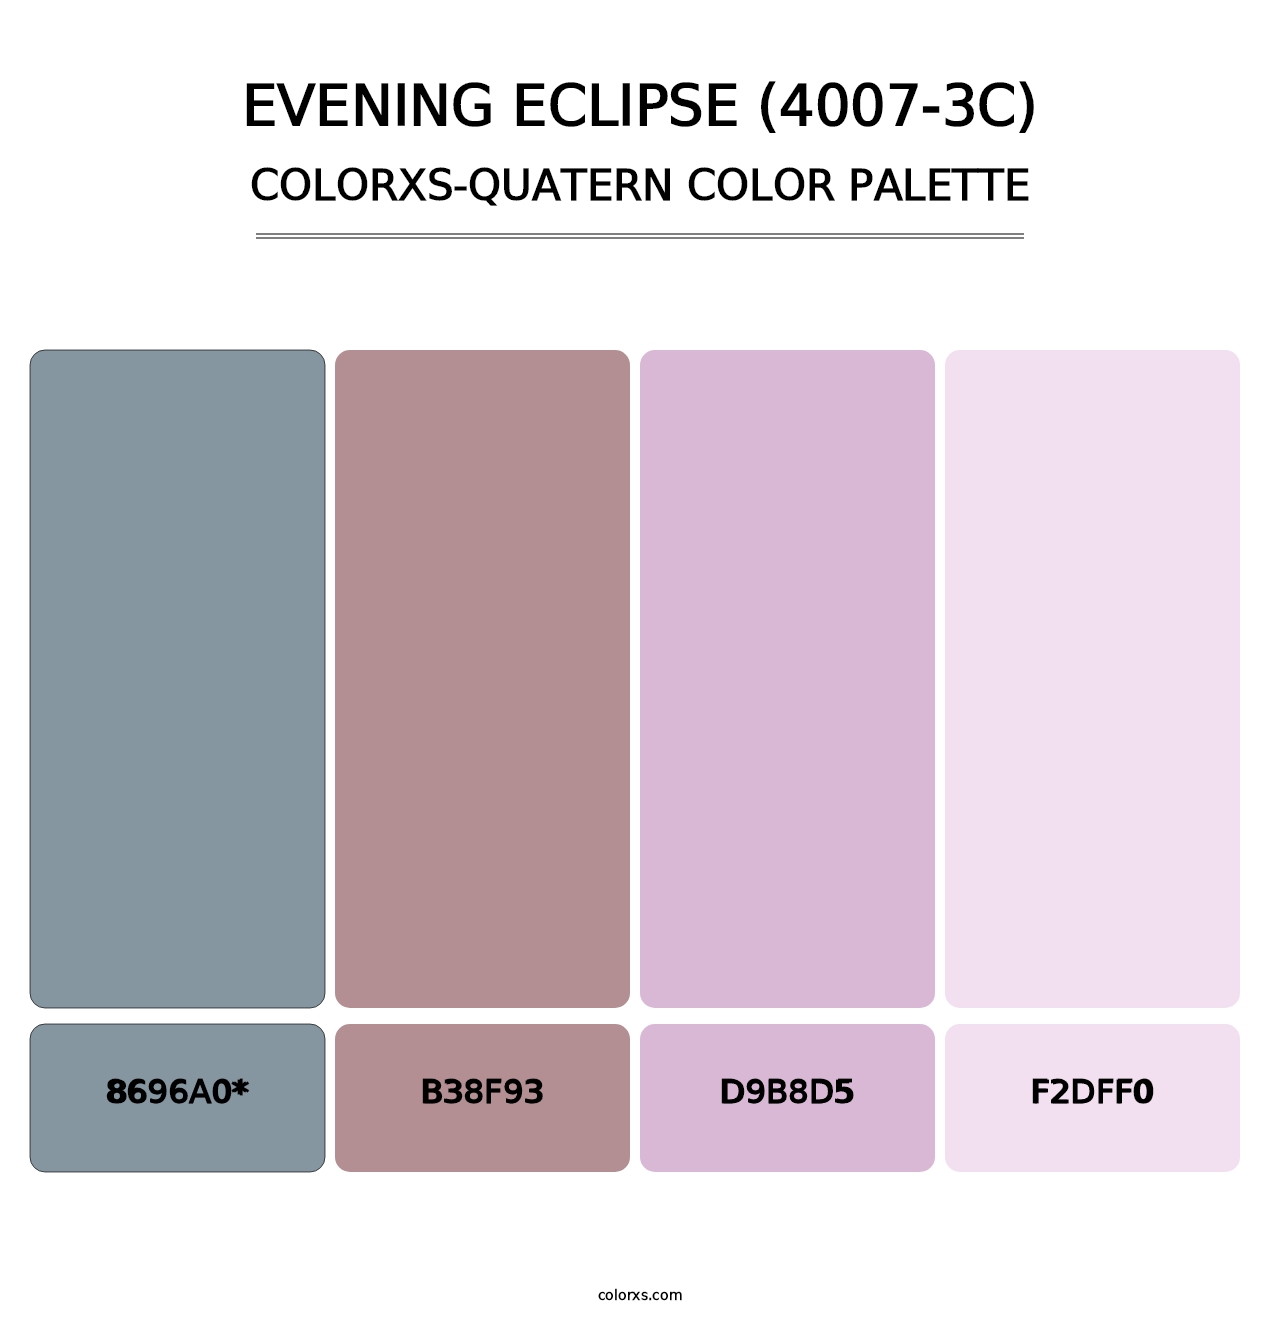 Evening Eclipse (4007-3C) - Colorxs Quatern Palette